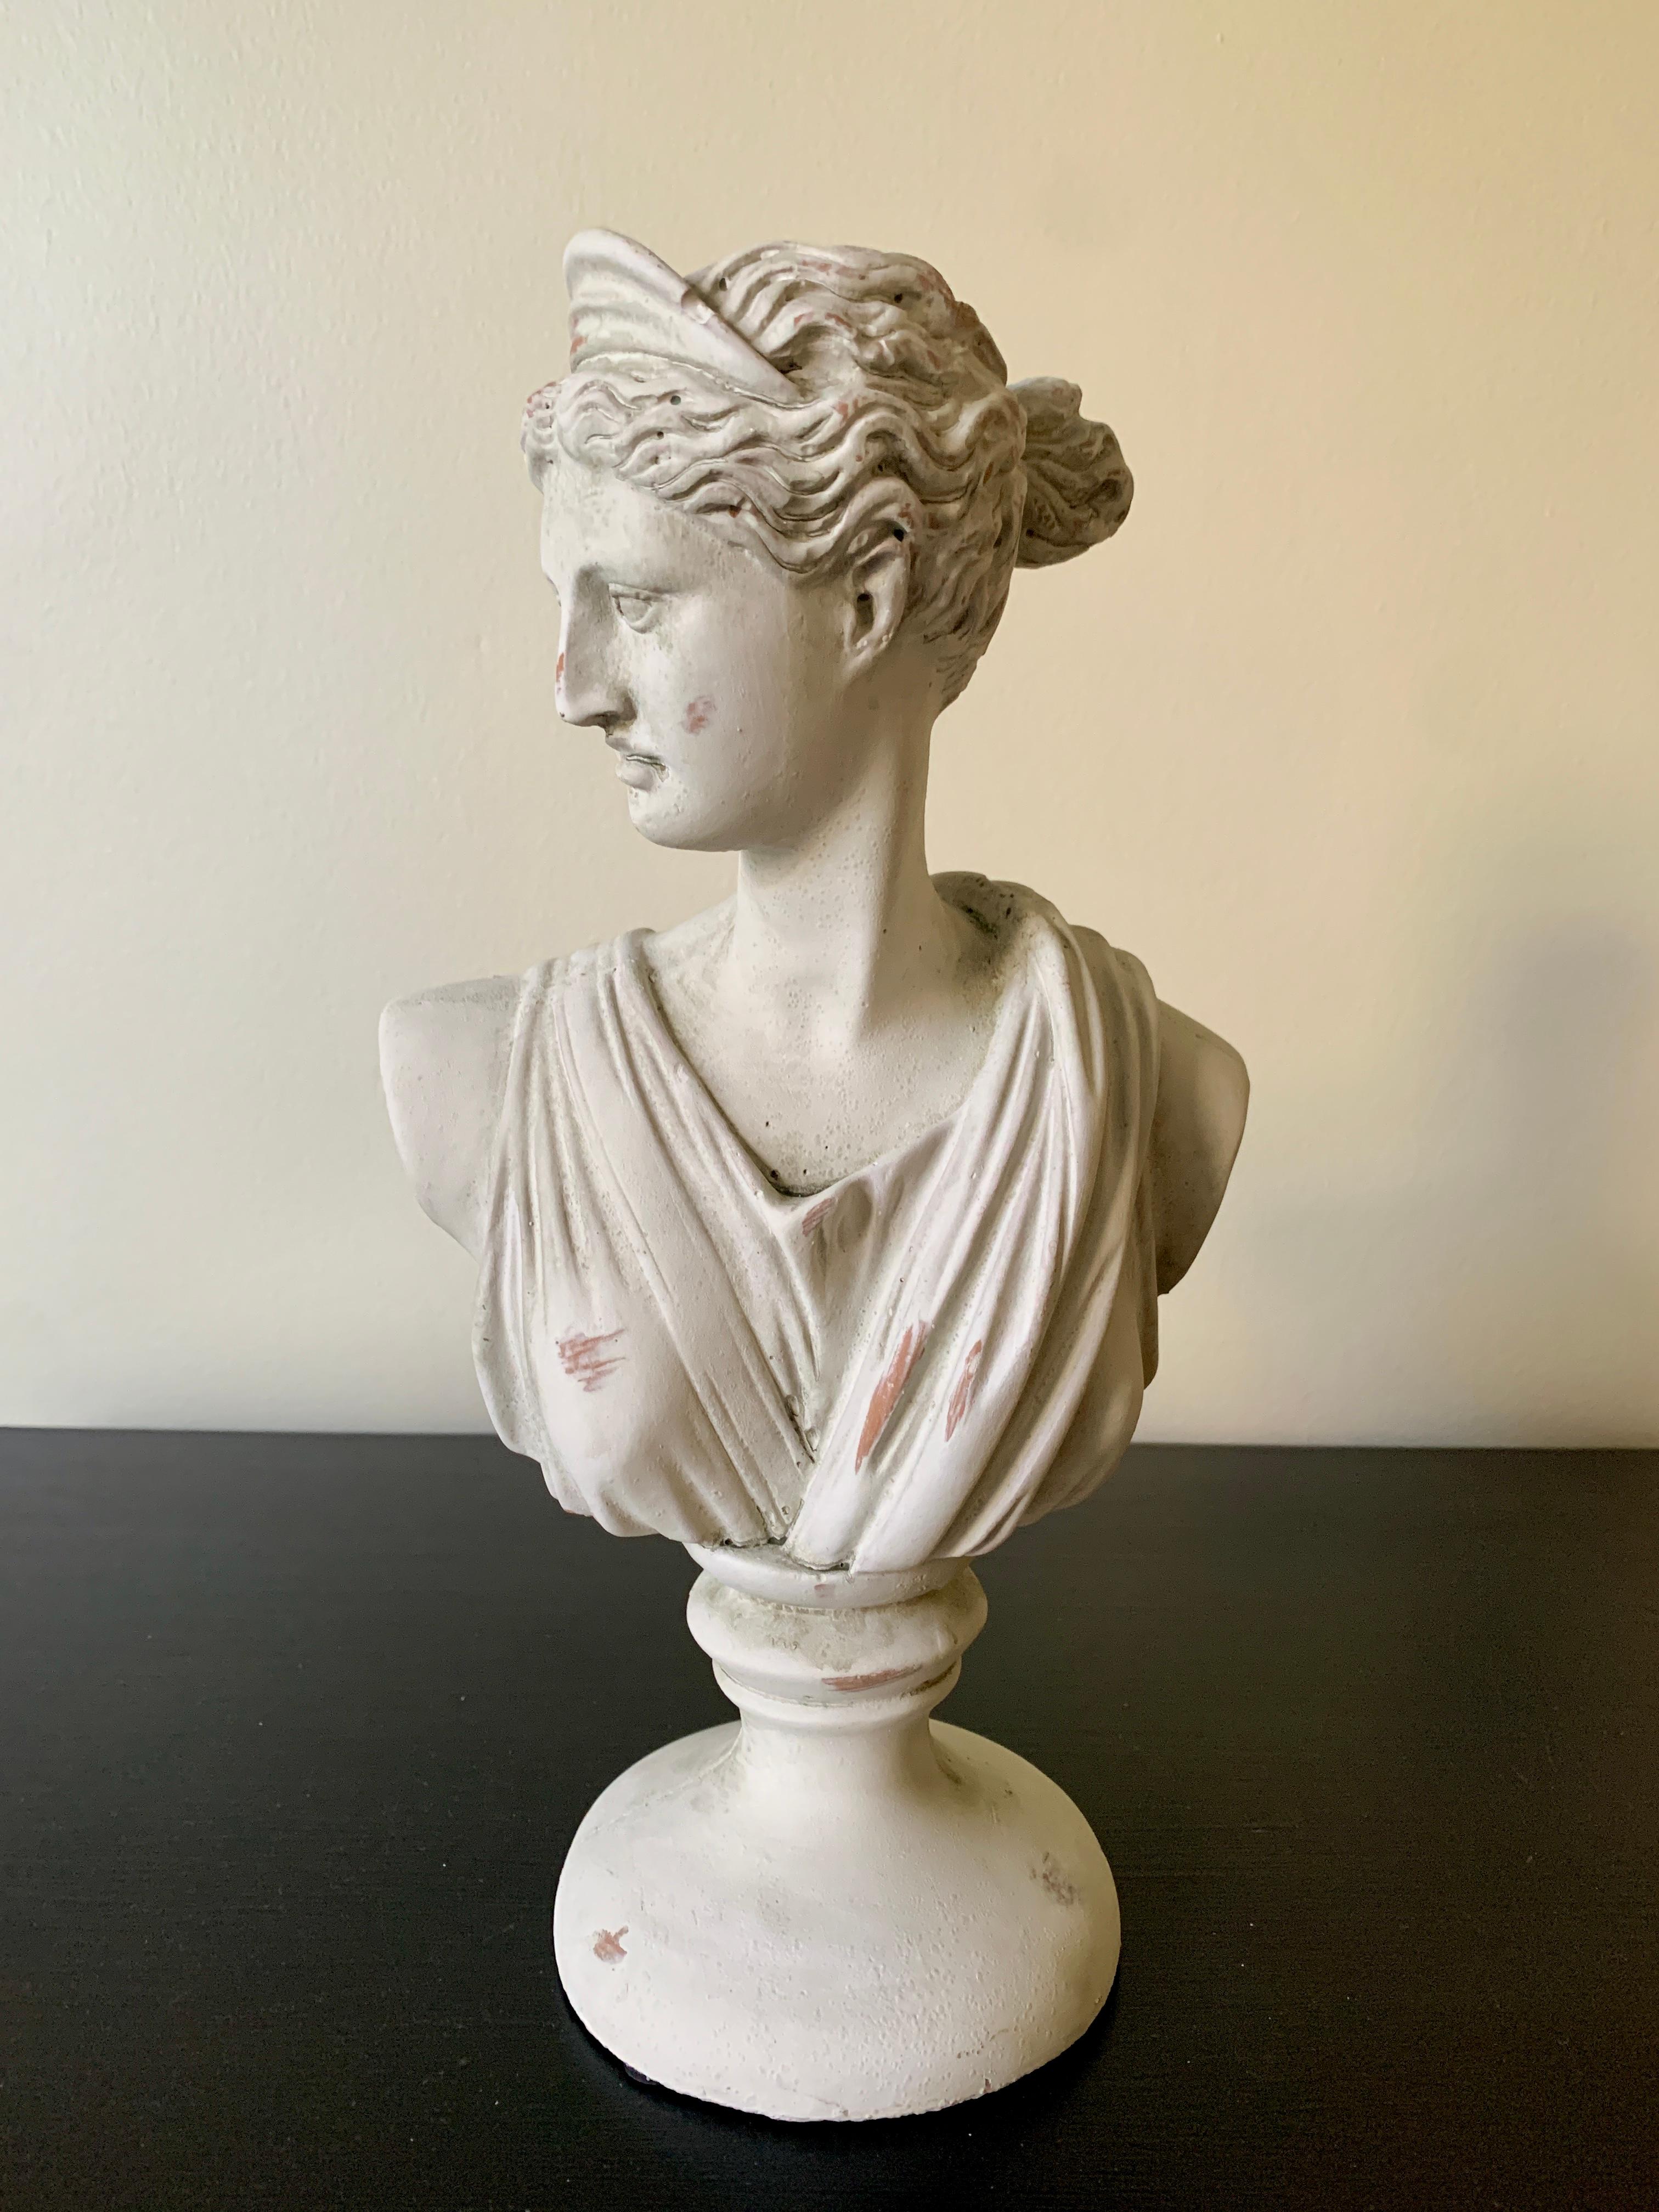 Eine wunderschöne Gipsbüste der Göttin Diana der Jägerin im neoklassischen Grand Tour Stil

USA, 21. Jahrhundert

Maße: 8 